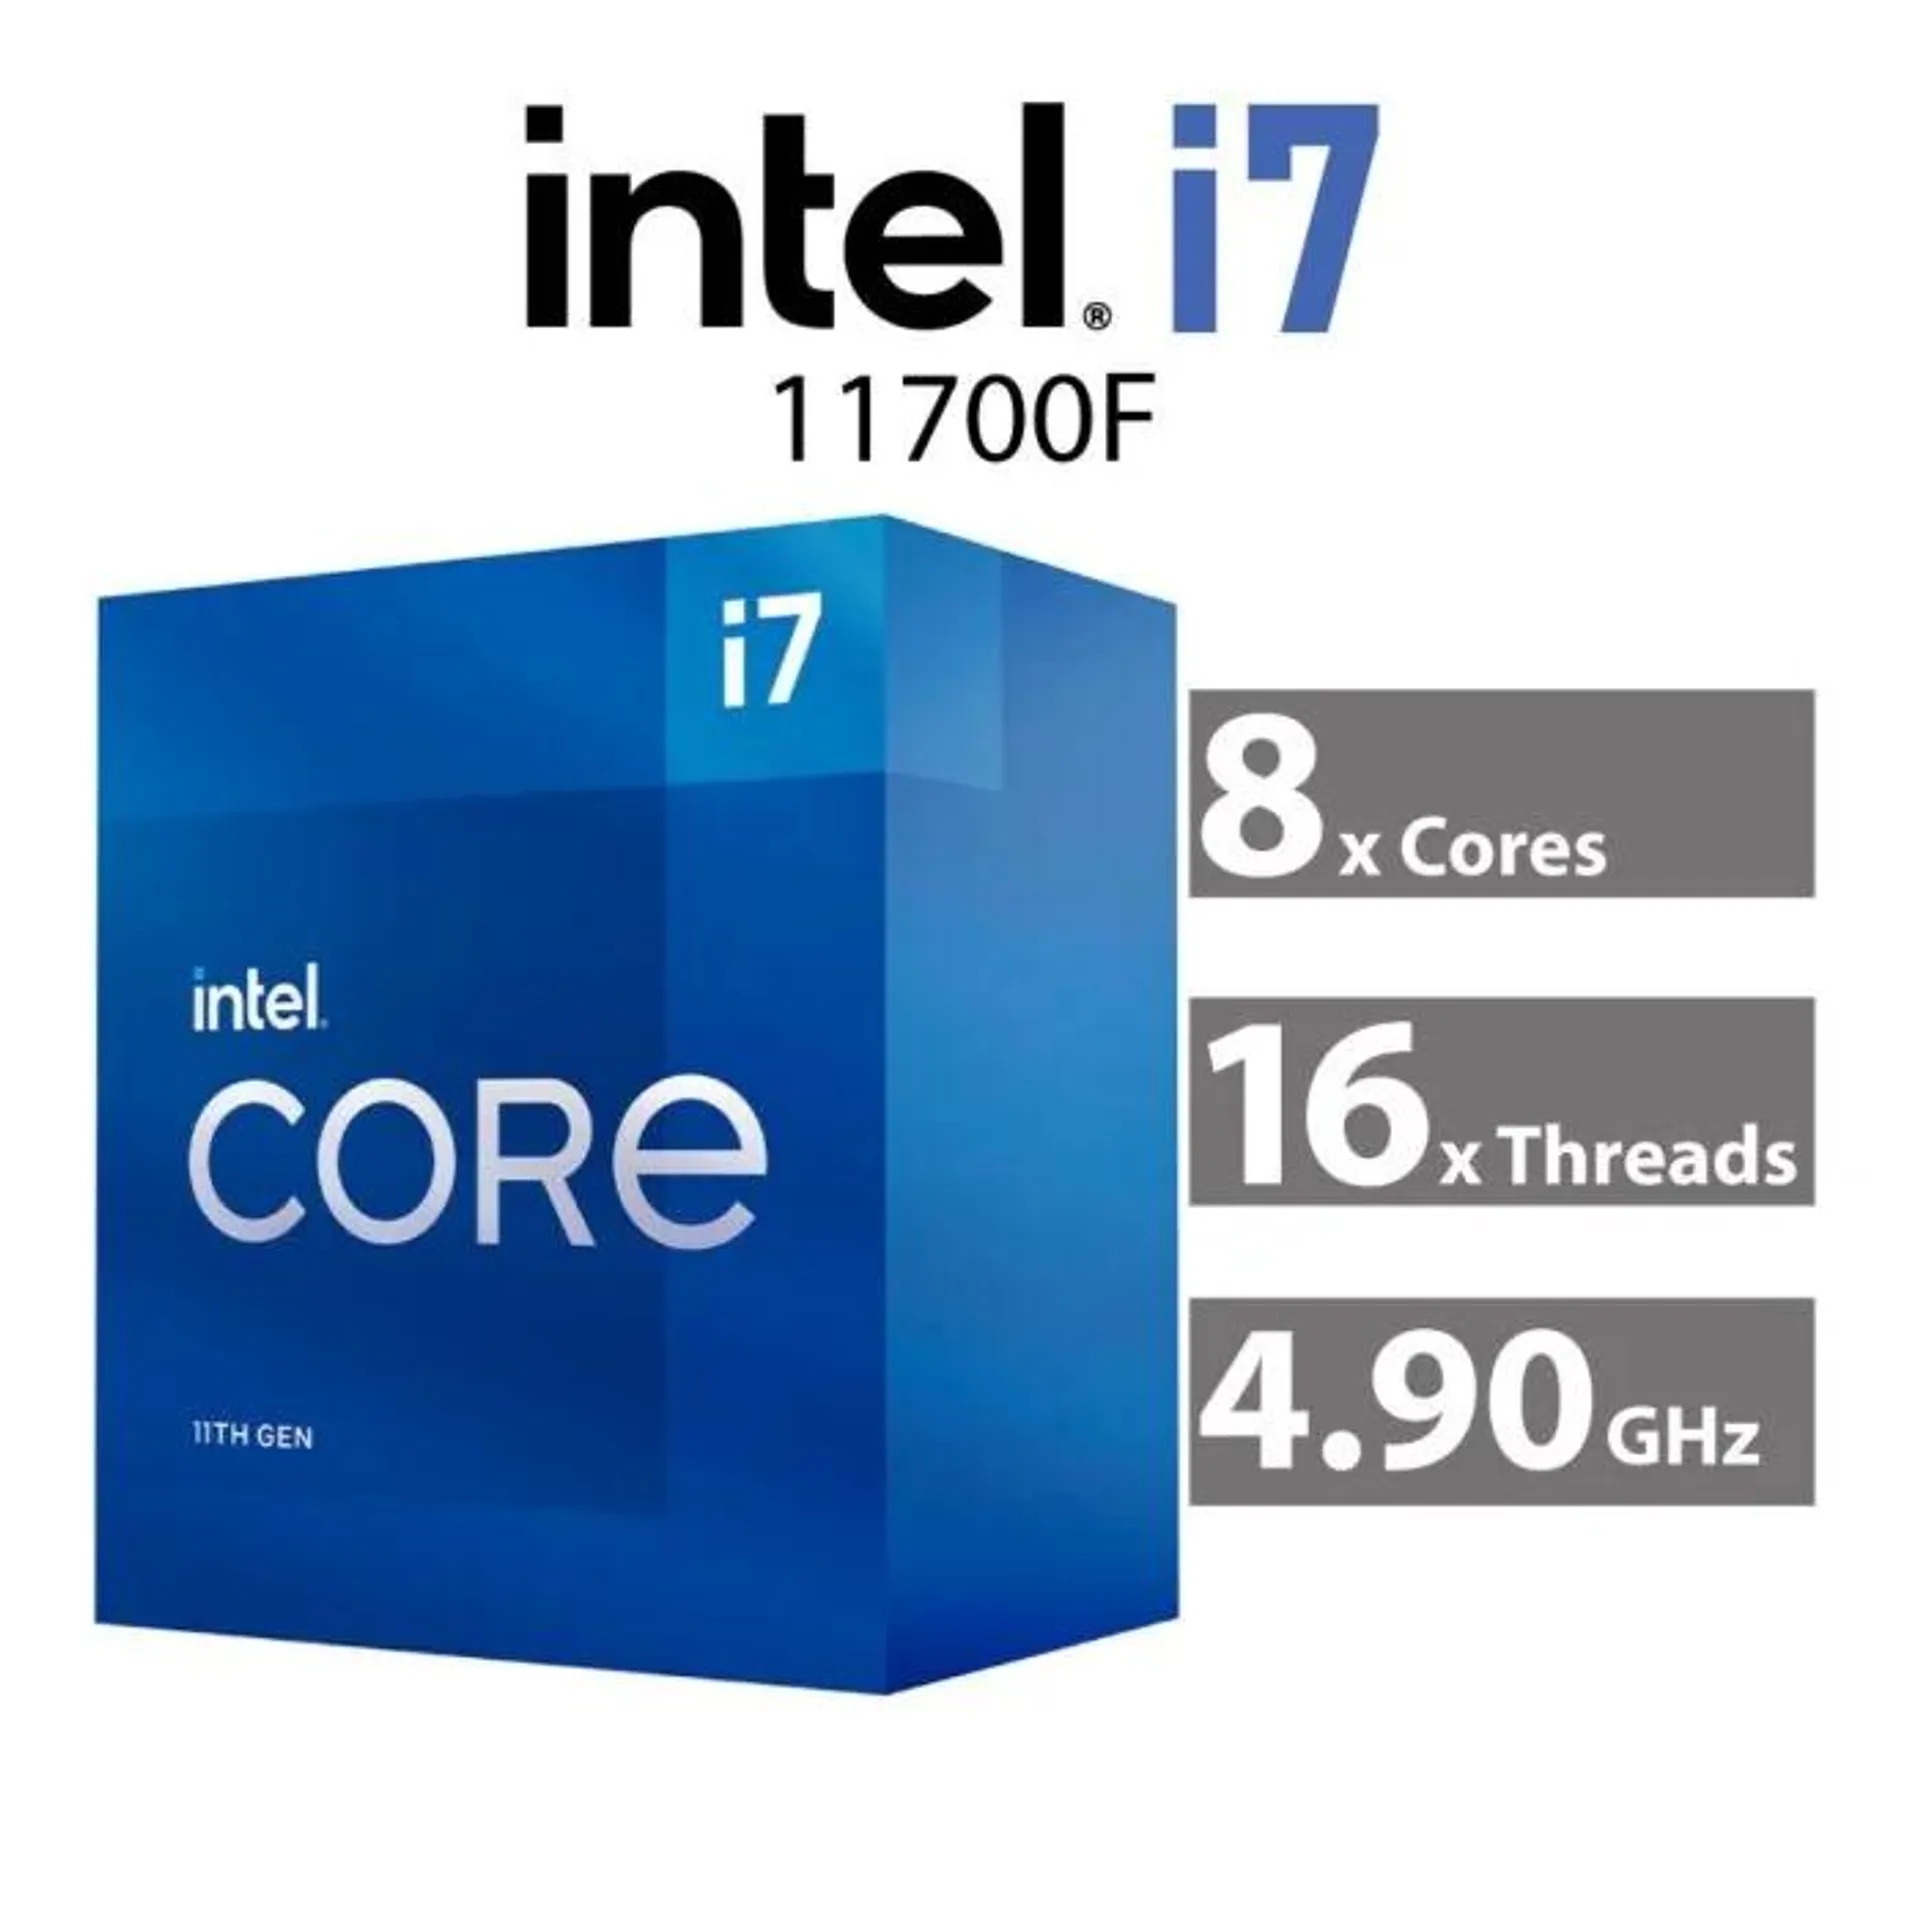 Intel Core i7-11700F Rocket Lake 8-Core 2.50GHz LGA1200 65W BX8070811700F Desktop Processor